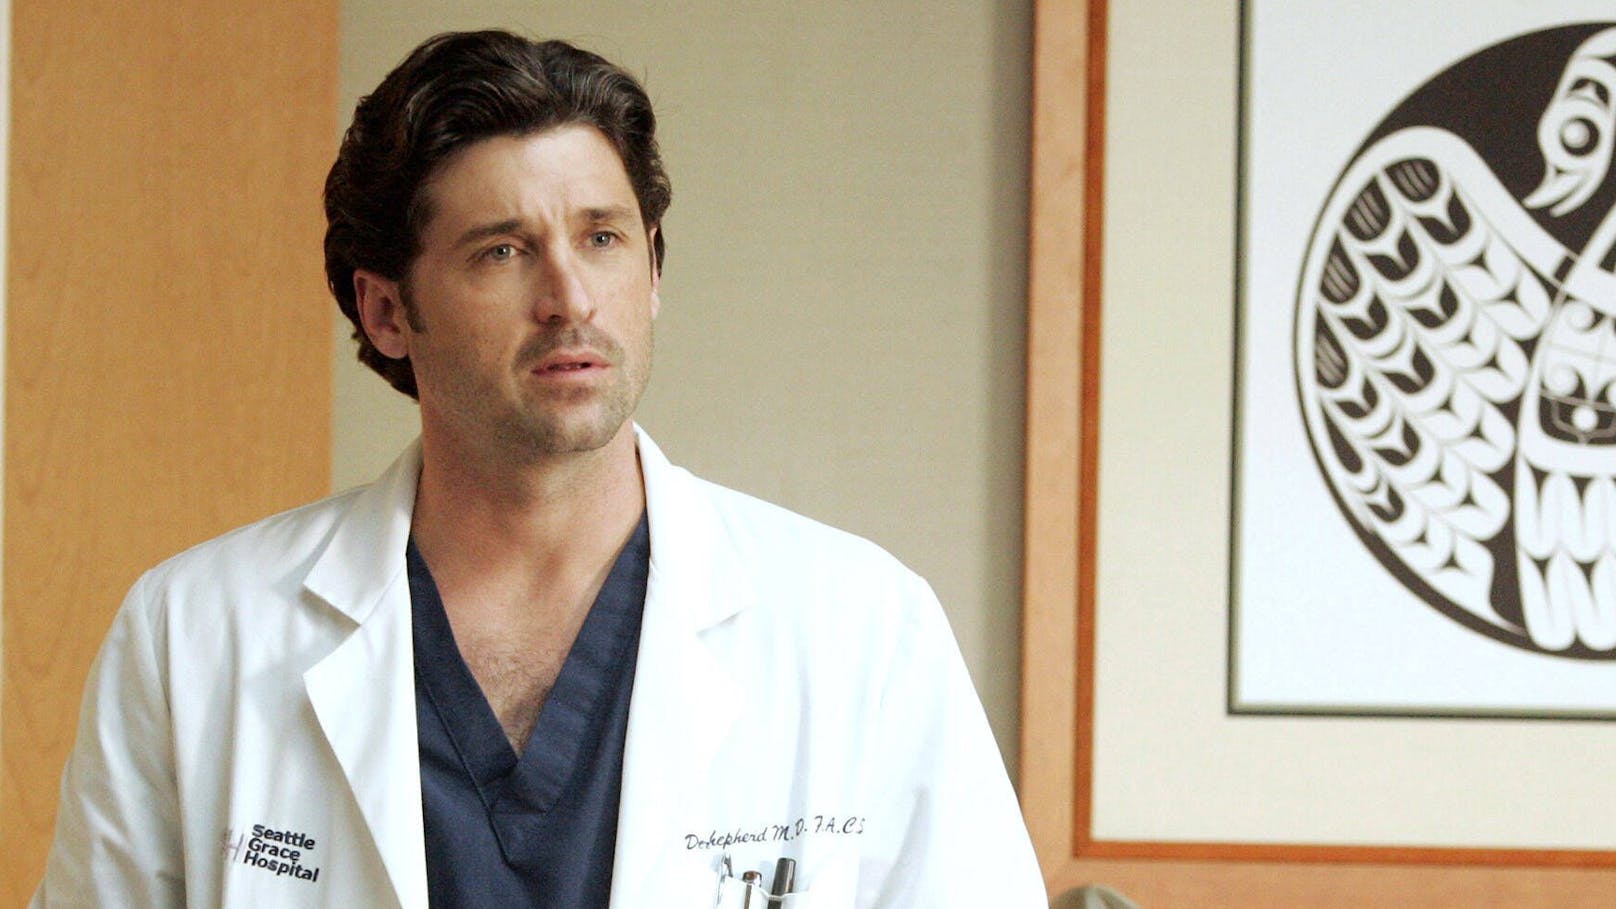 Patrick Dempsey verkörperte bis 2015 die Rolle des "McDreamy" alias Dr. Derek Shepard in der Krankenhausserie "Grey's Anatomy". 2021 kehrte er zurück - für eine Gastrolle.